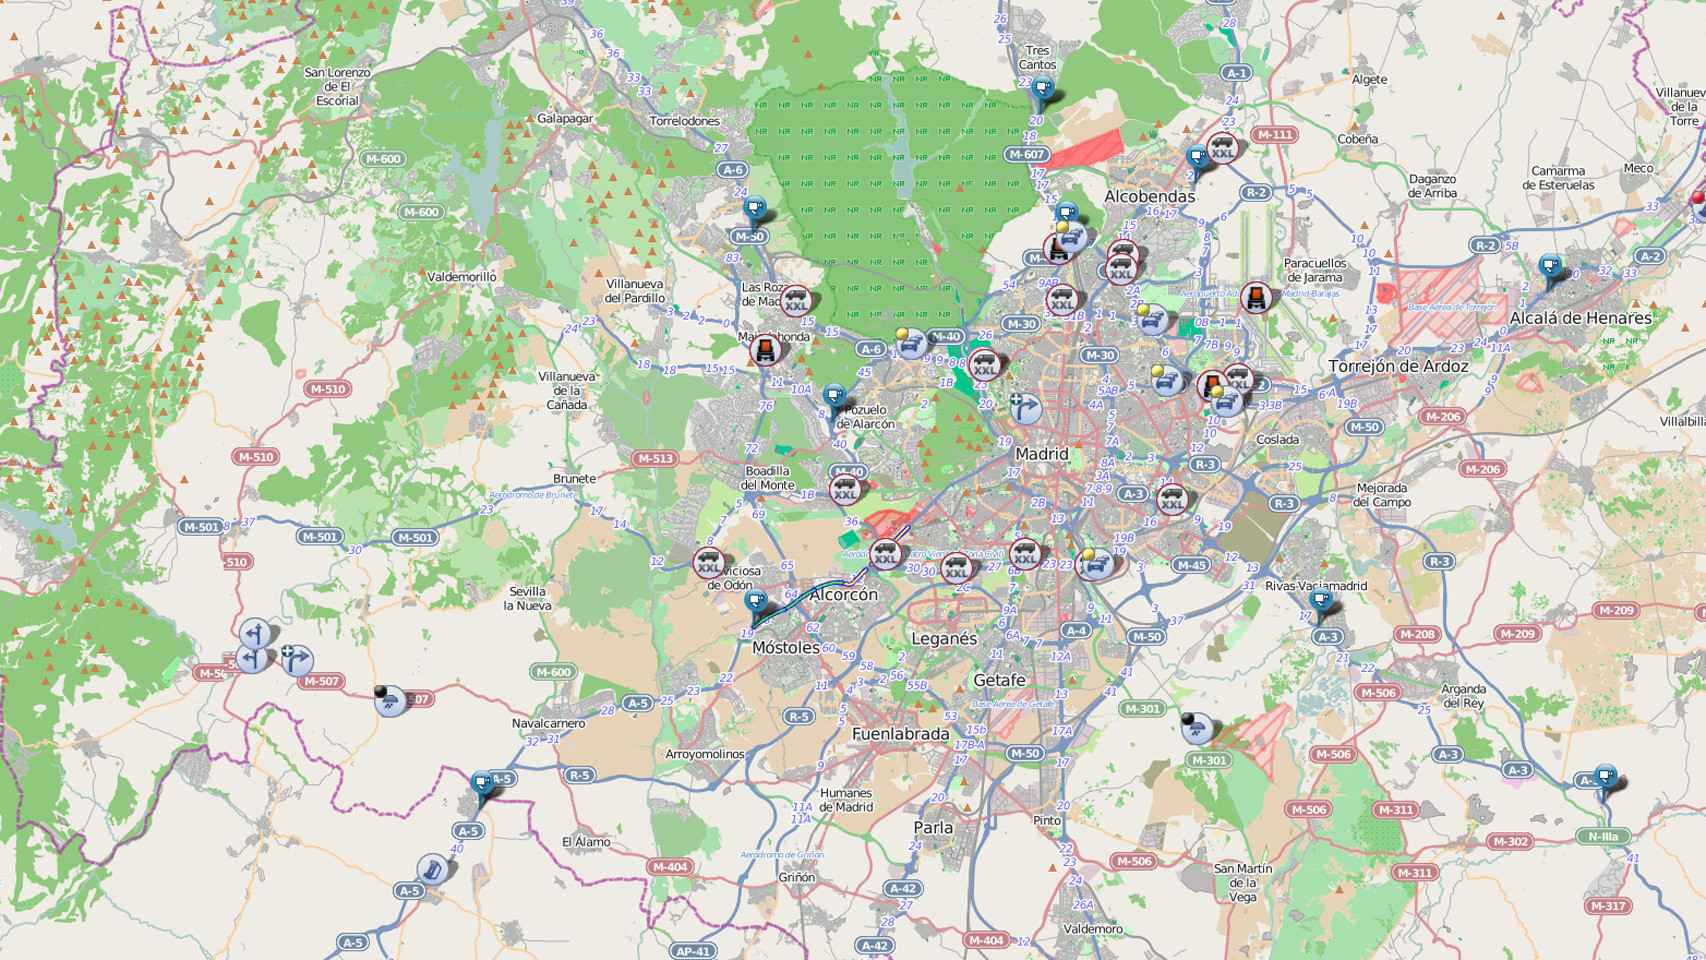 Mapa de Madrid con toda la geografía de carreteras plasmada.